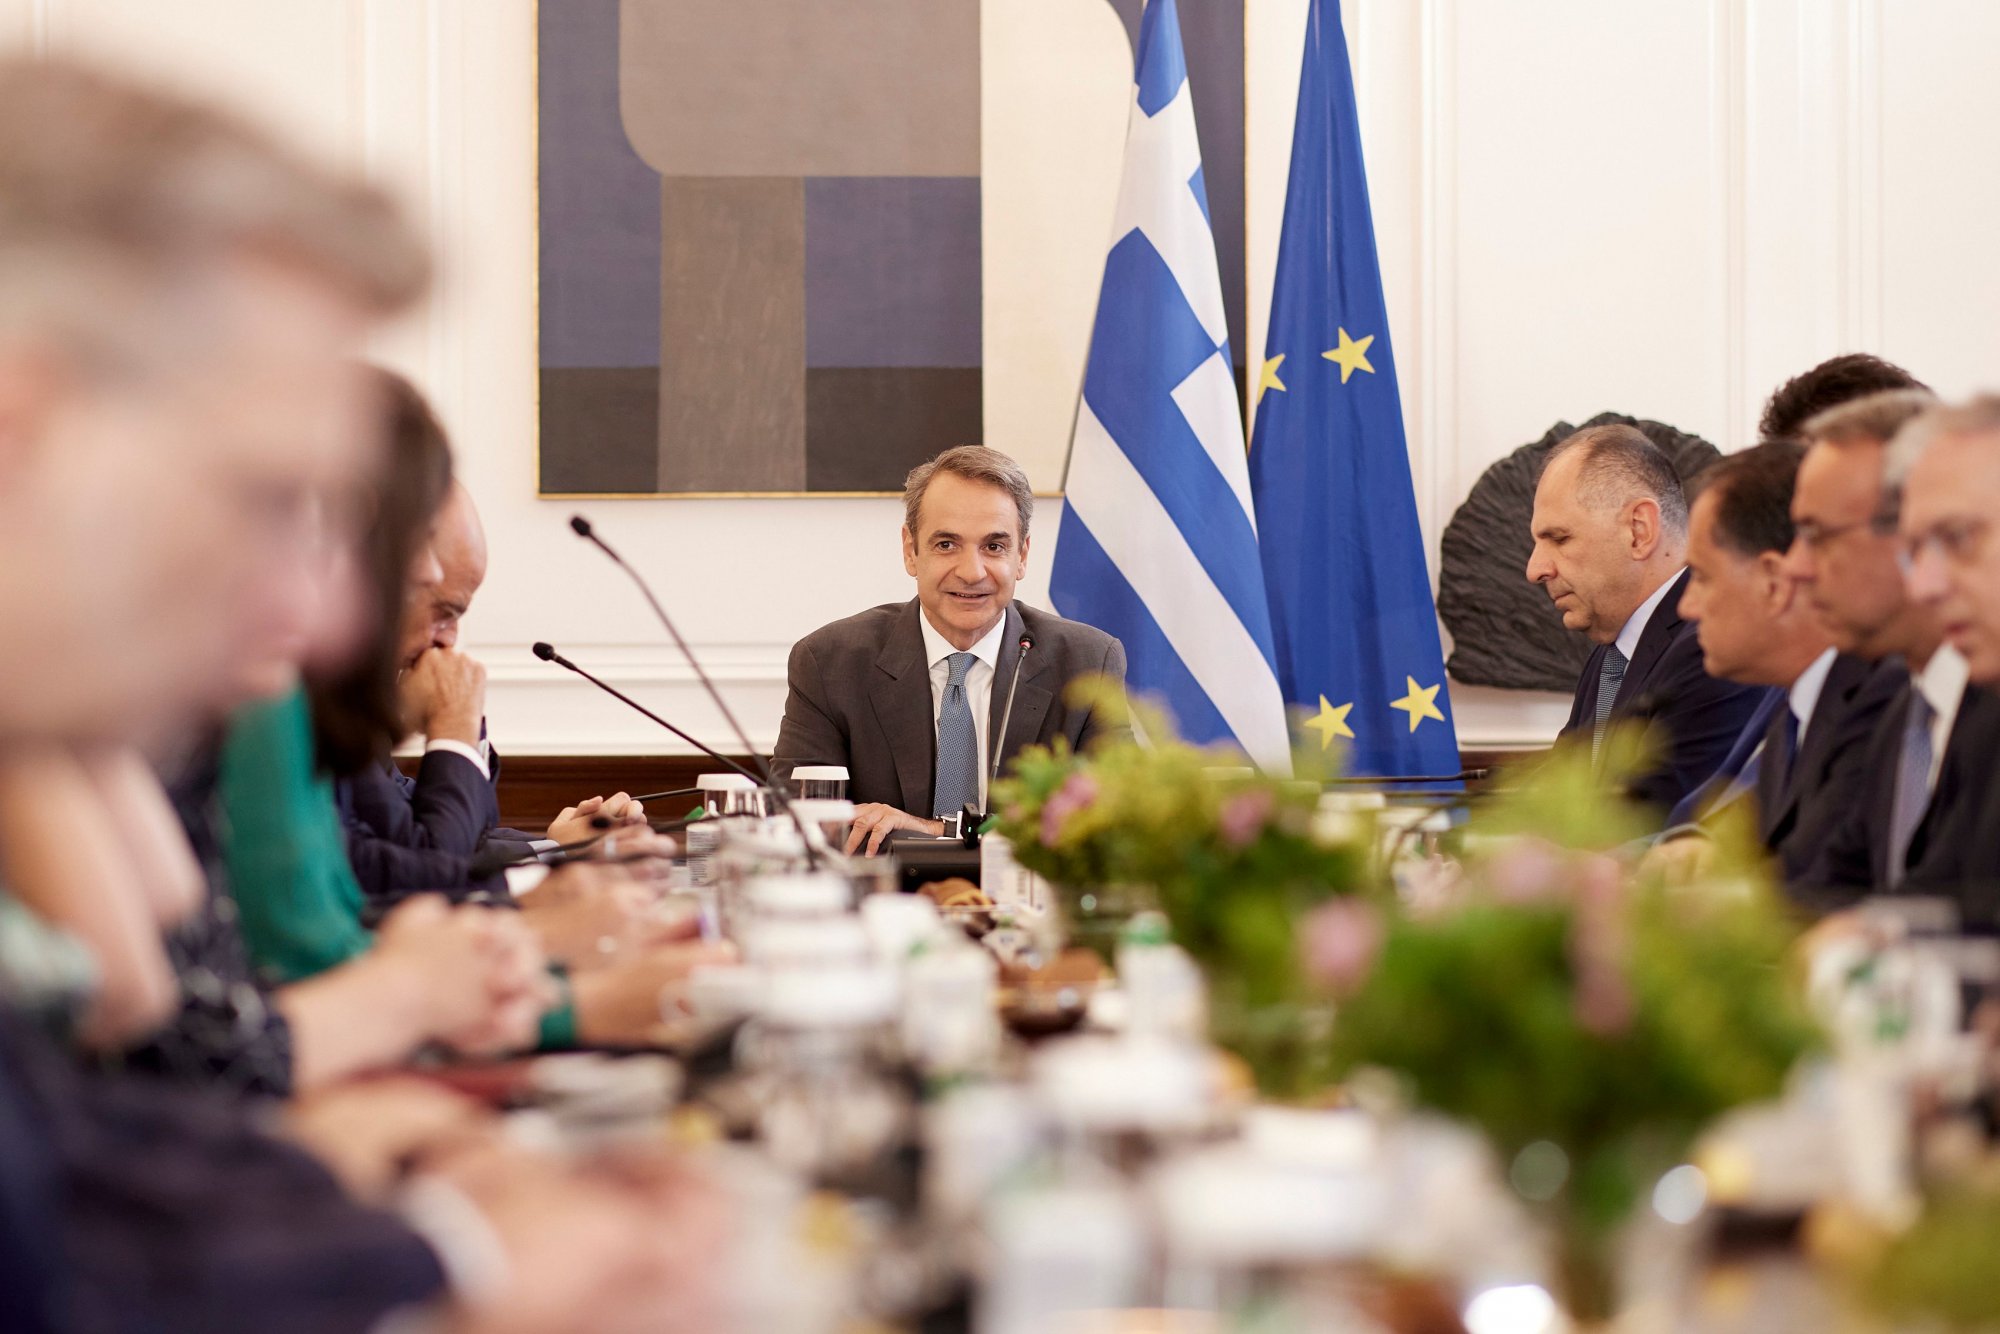 Τι ζήτησε ο Κυριάκος Μητσοτάκης στο πρώτο υπουργικό συμβούλιο μετά τον ανασχηματισμό